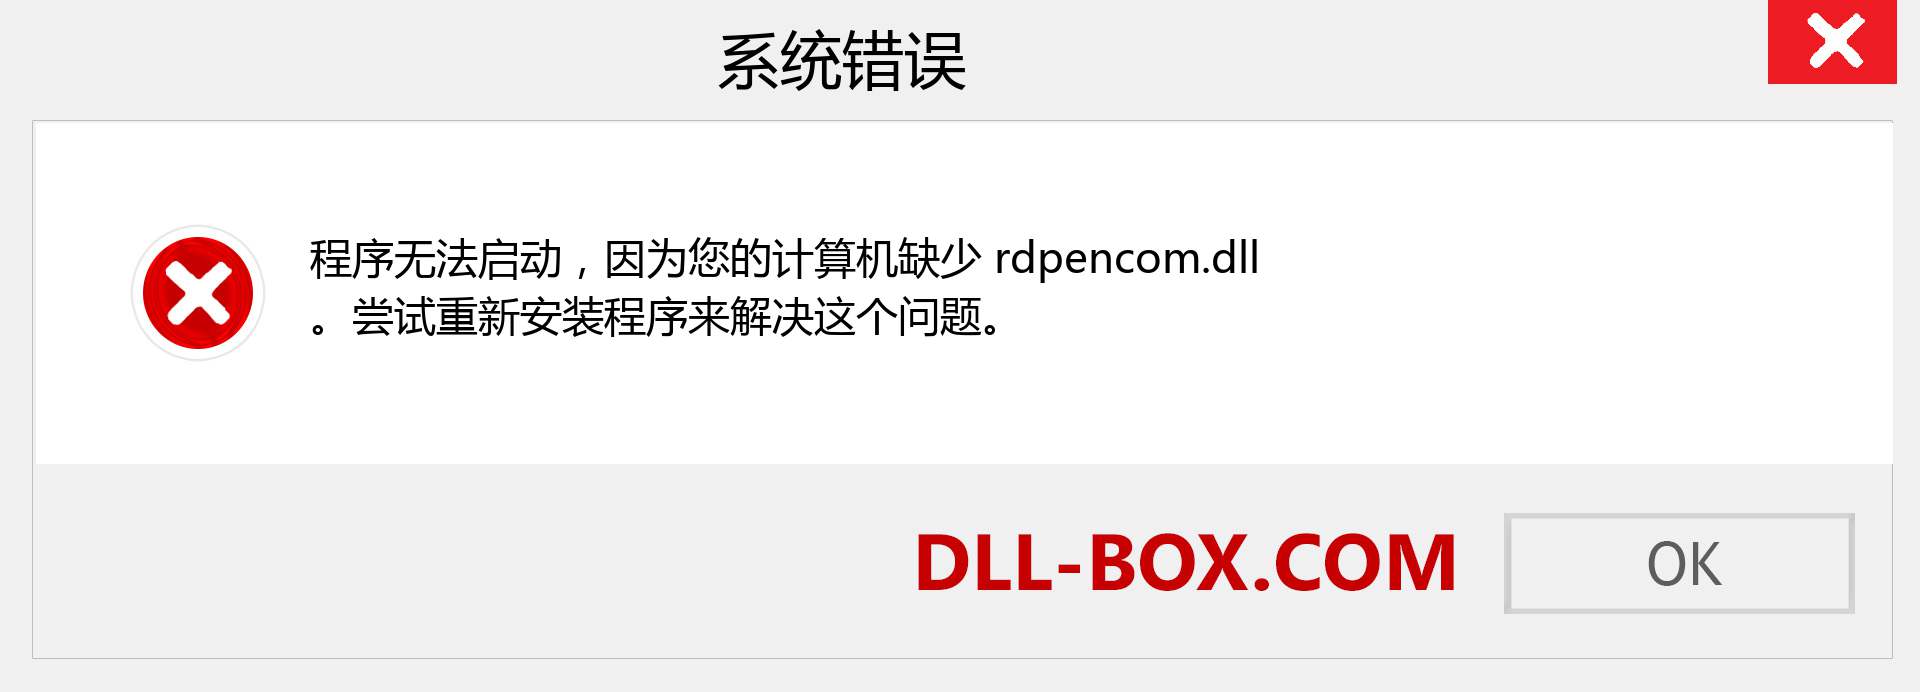 rdpencom.dll 文件丢失？。 适用于 Windows 7、8、10 的下载 - 修复 Windows、照片、图像上的 rdpencom dll 丢失错误